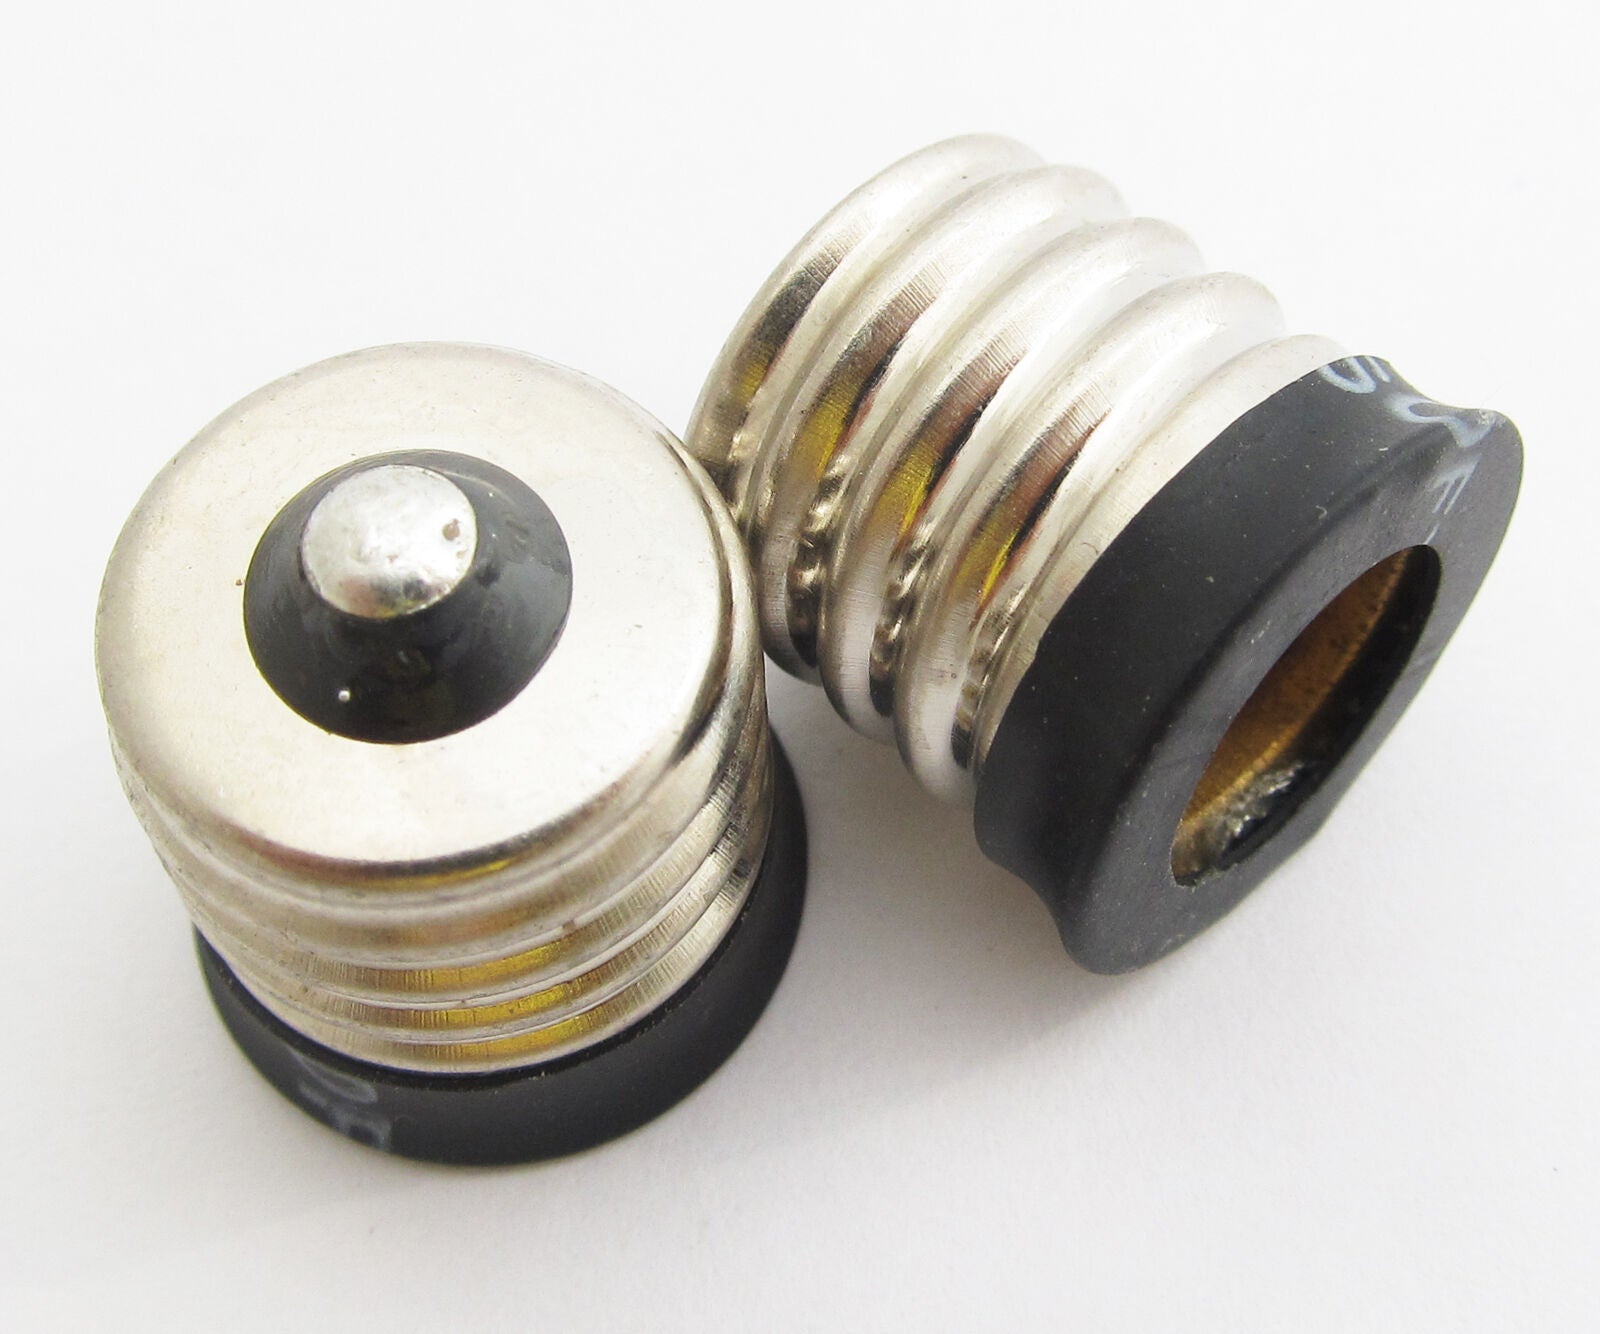 10pcs LED Light Bulb Lamp Converter E17 Male To E12 Female Candelabra Socket New